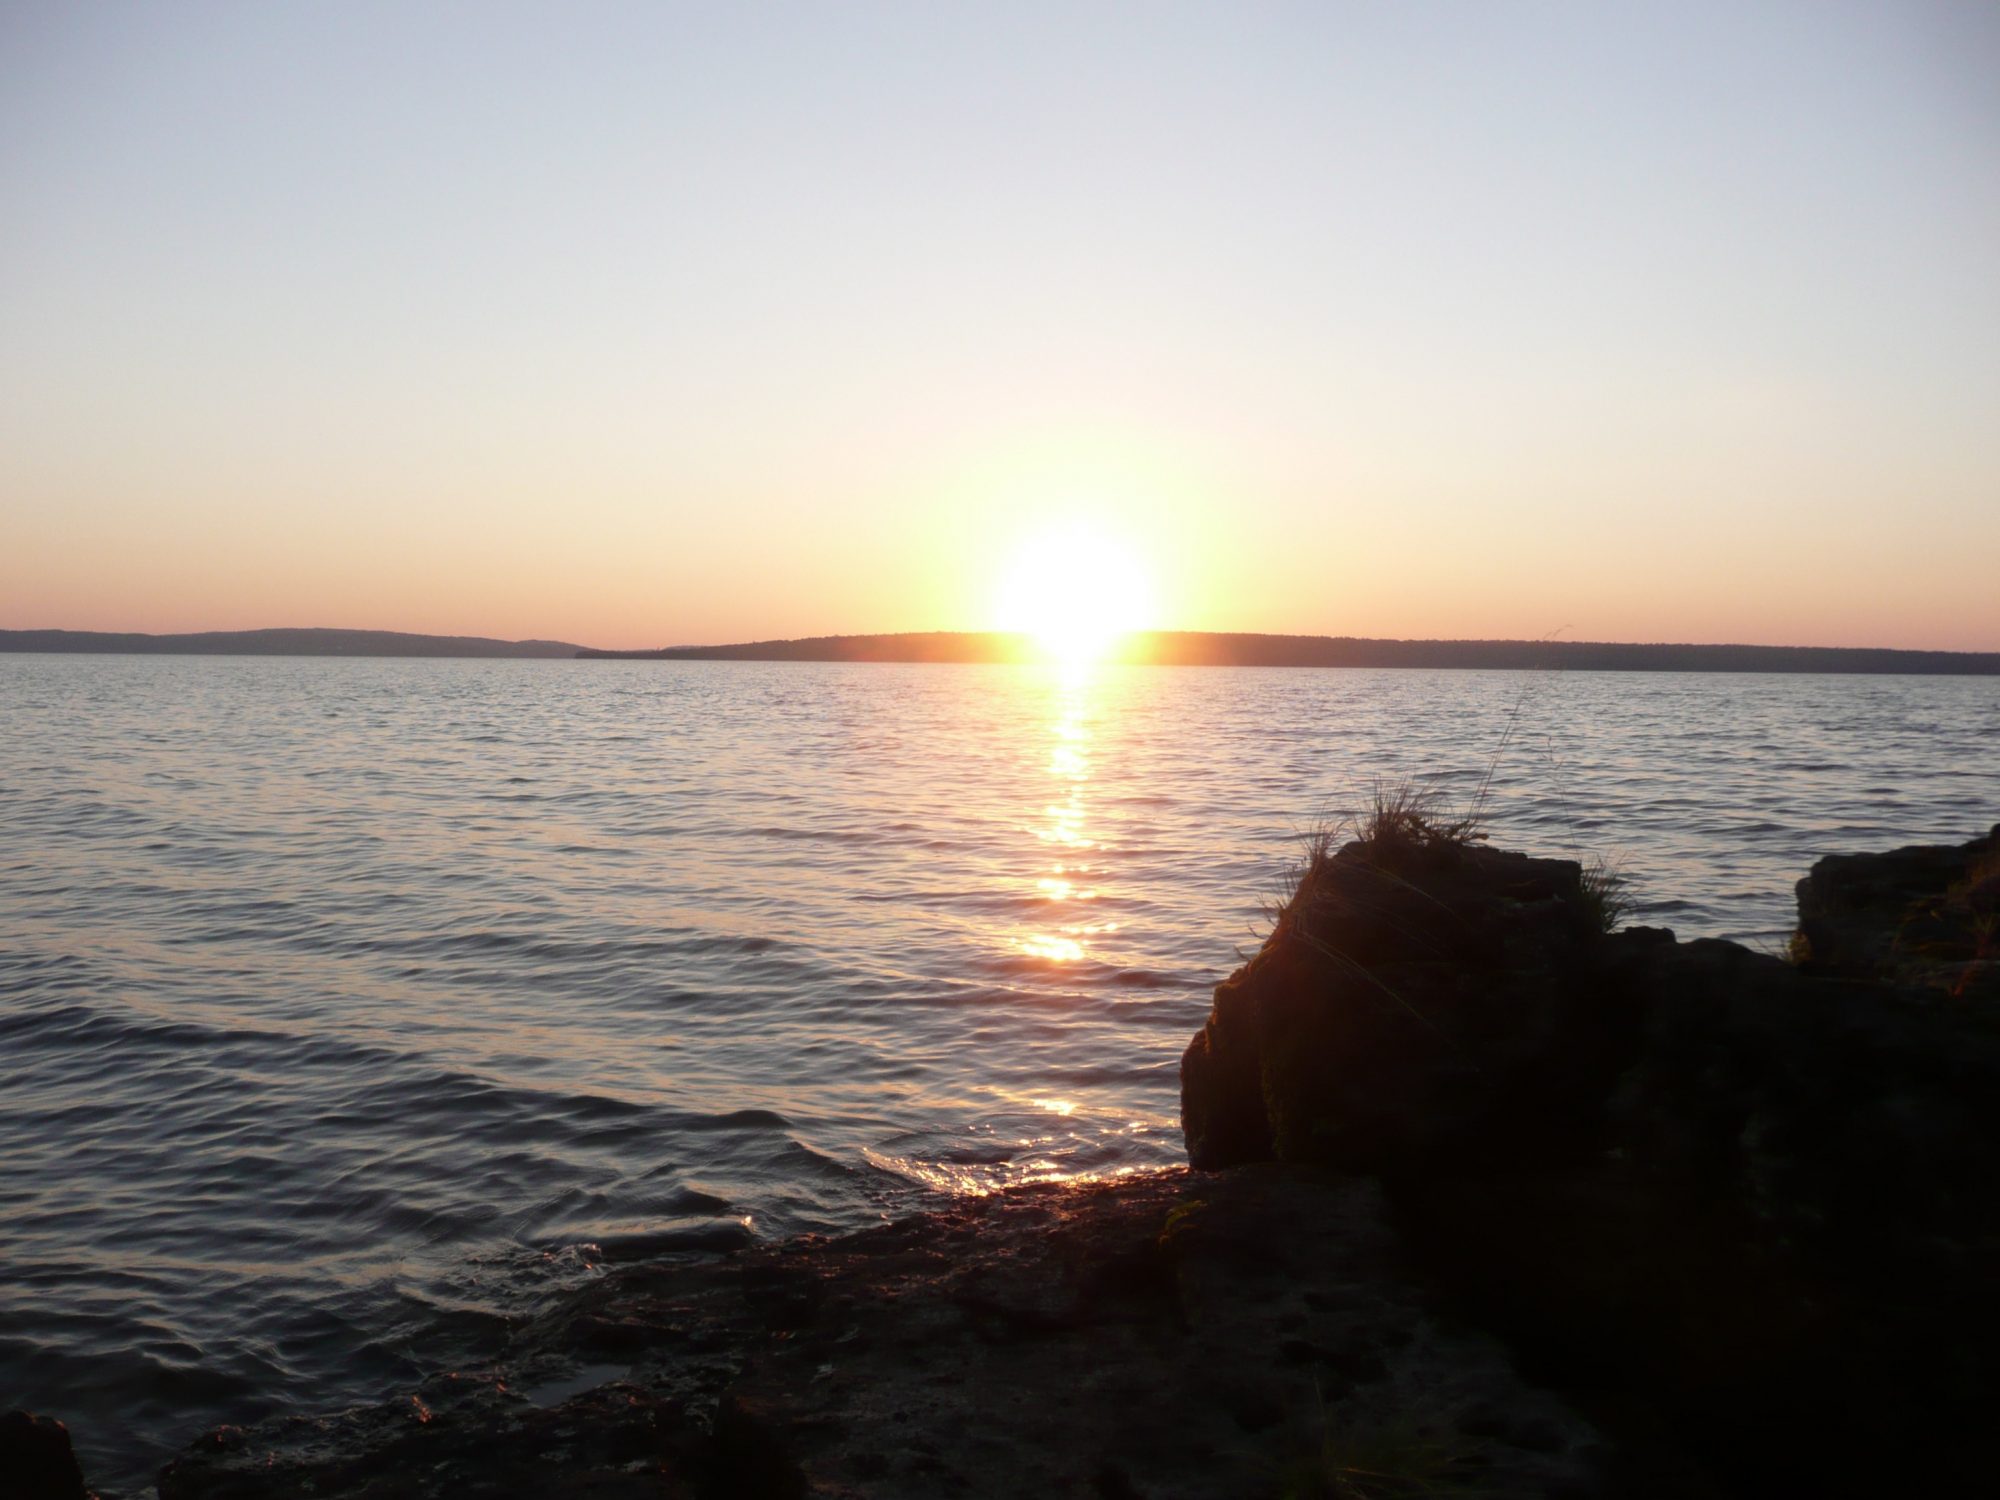 Sunrise on Farr Island on beautiful Lake Temiskaming / Levée de soleil à l'île Farr sur le magnifique lac Temiskaming